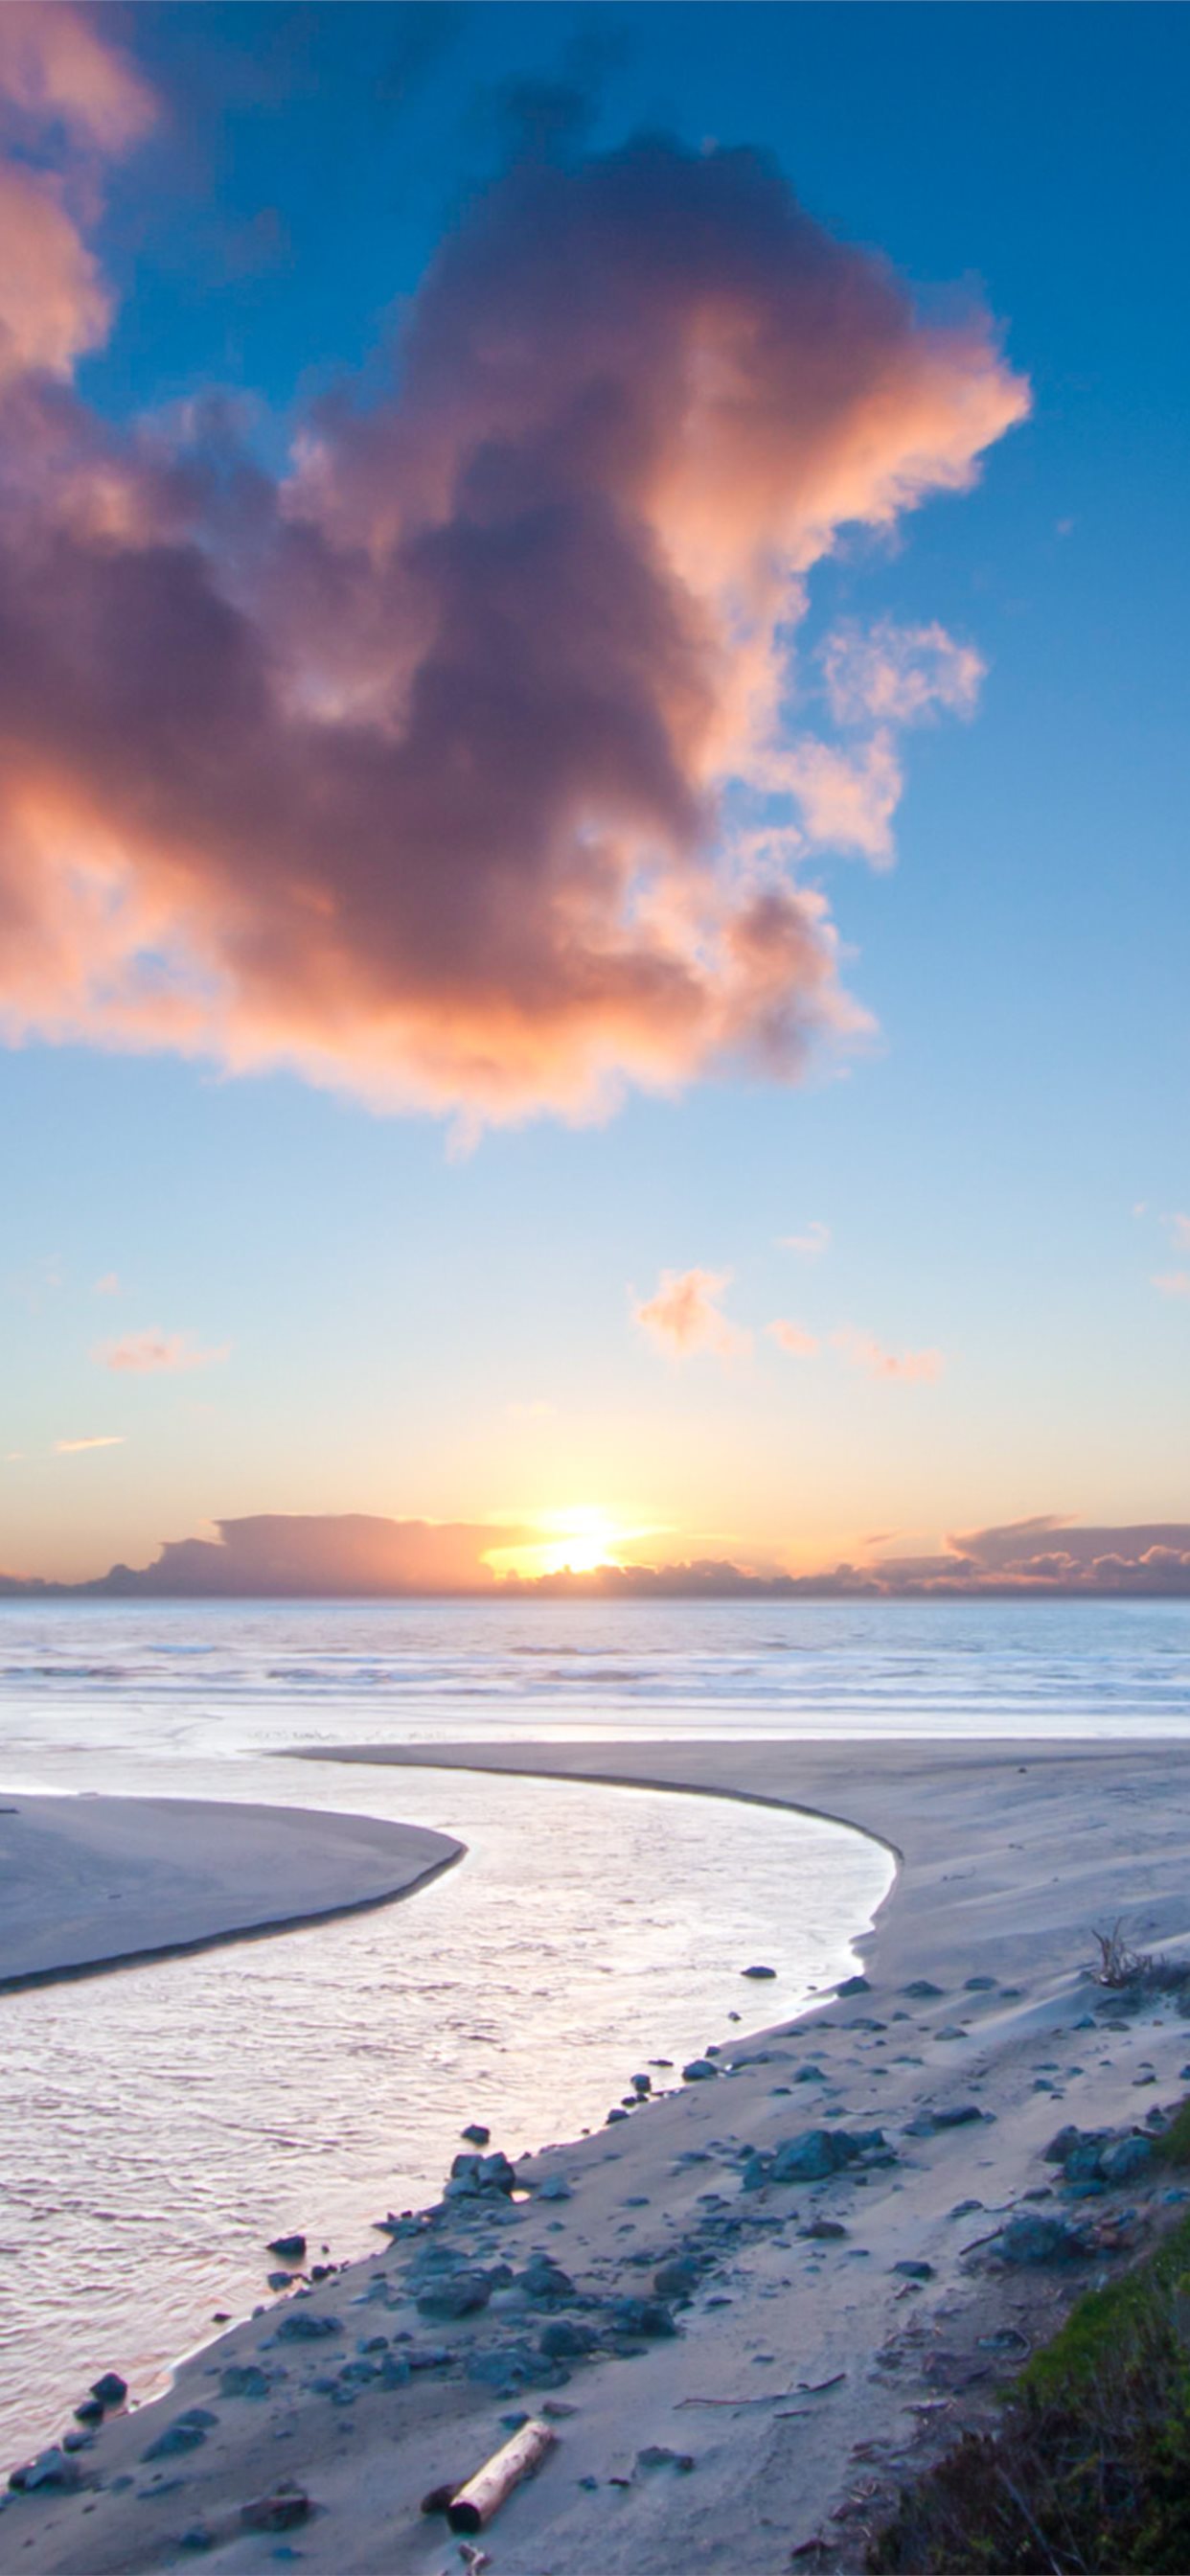 日出前的海边沙滩风景手机壁纸